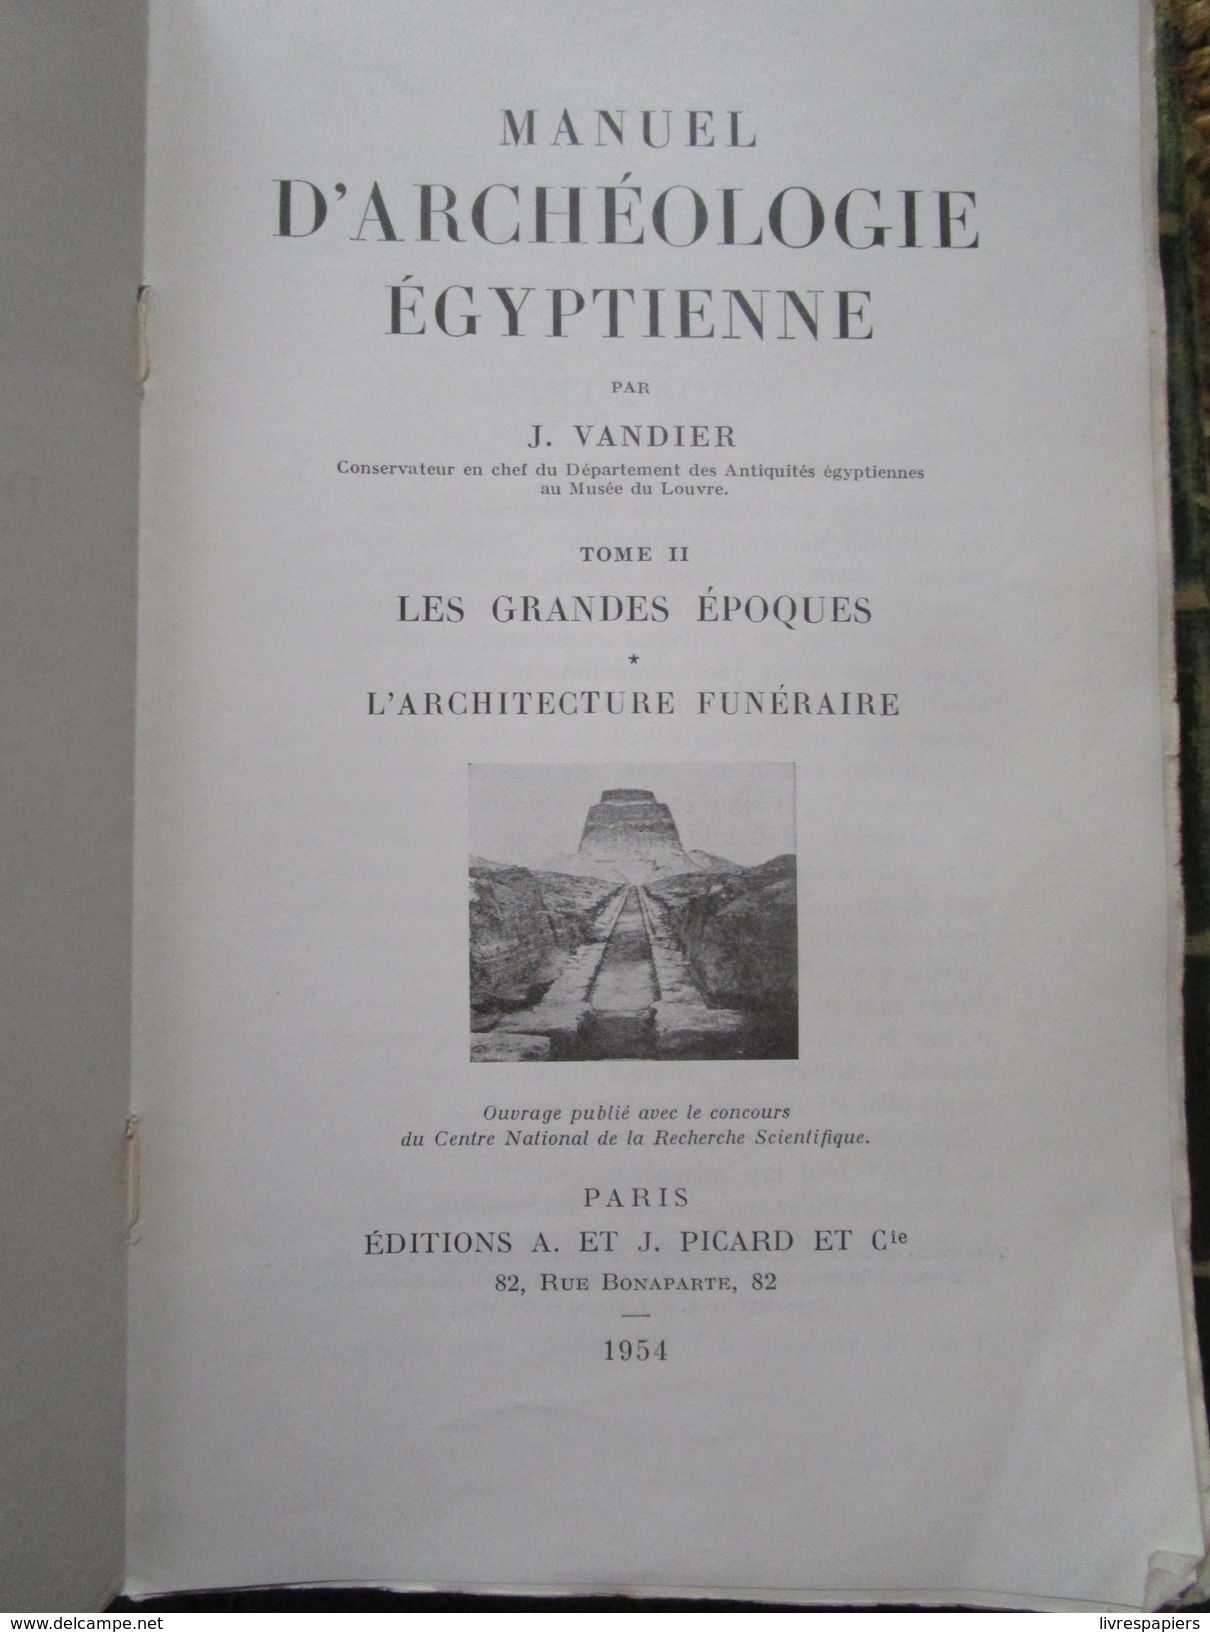 Vandier Manuel D'archeologie Egyptienne Tome II Les Grandes Epoques Architecture Funeraires 1954 PICARD - Archéologie